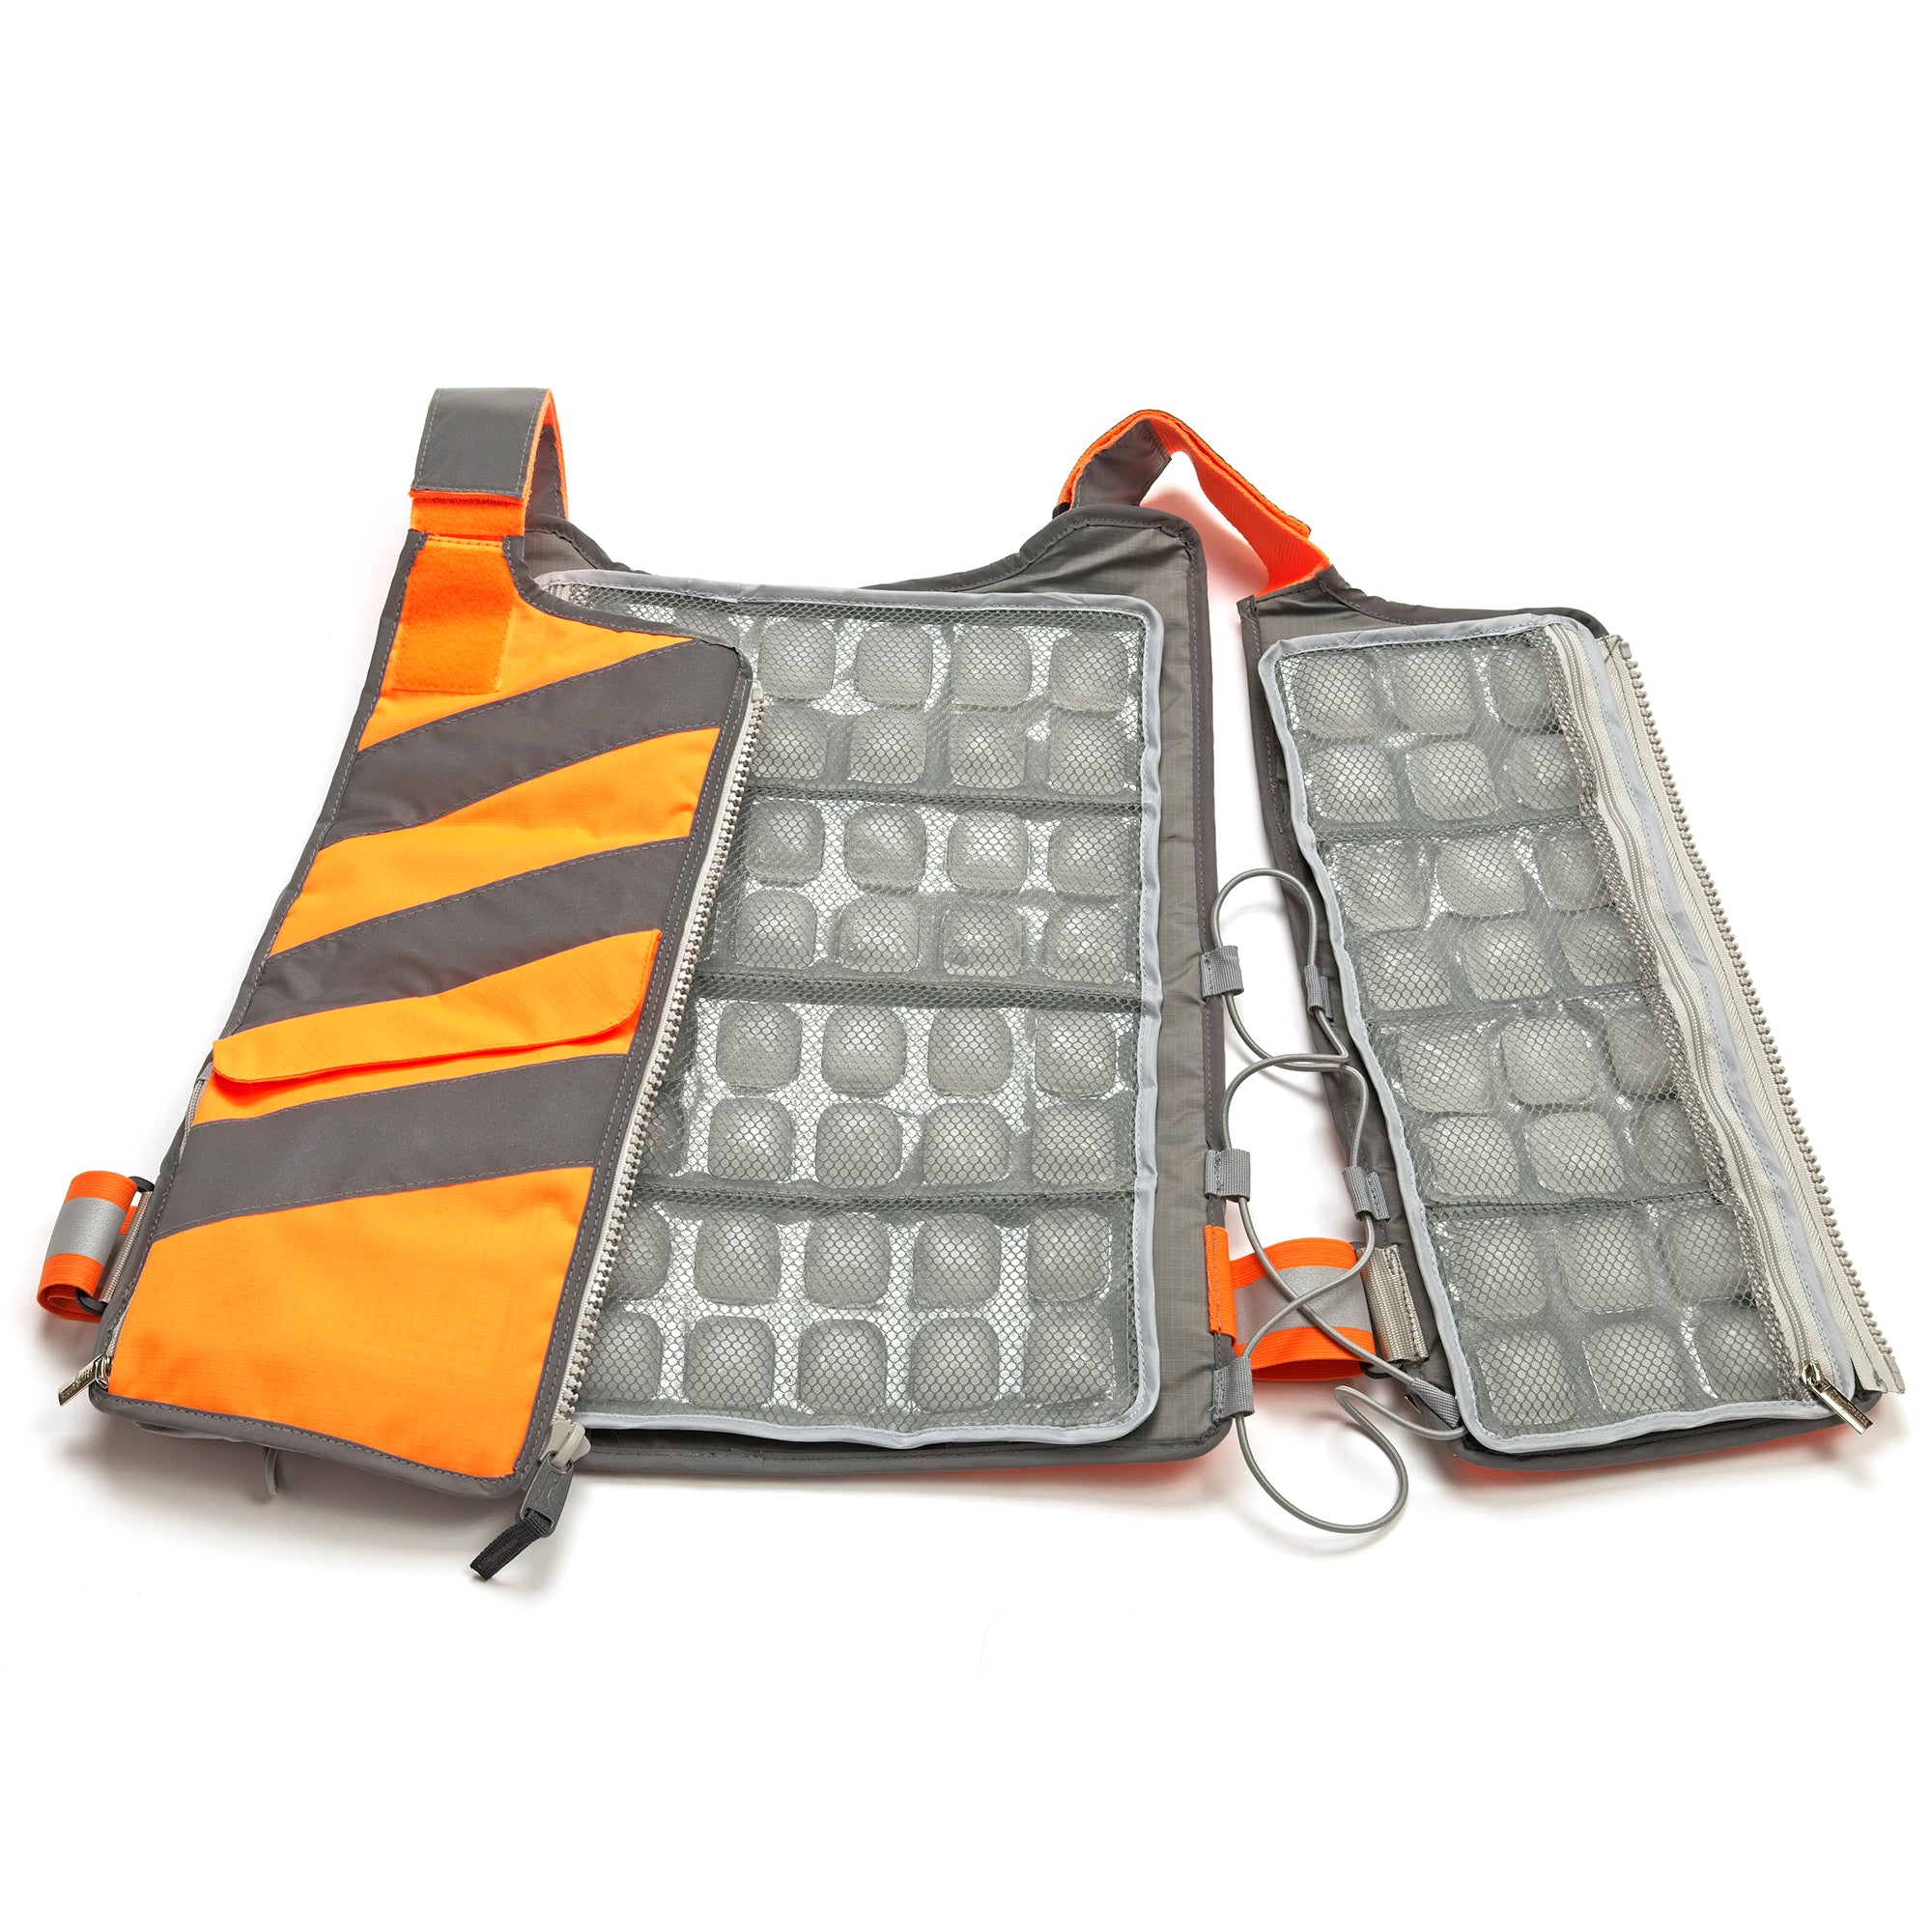 FlexiFreeze Professional Series Hi-Vis Ice Vest, open with panels viewable, orange